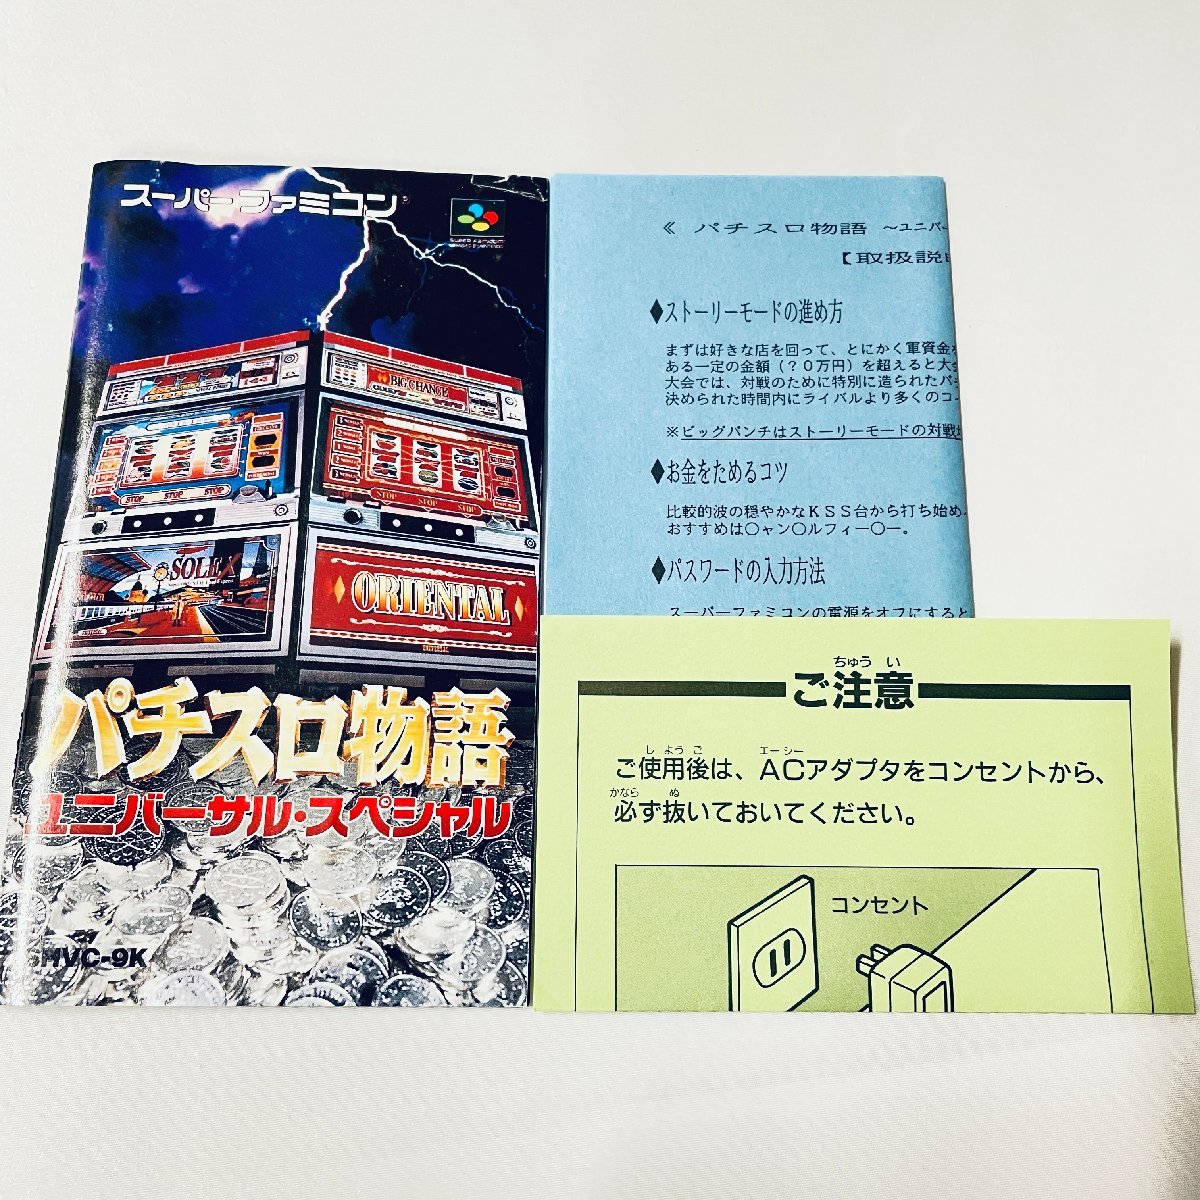 SFC Super Famicom soft игровой автомат история универсальный * специальный коробка мнение есть пуск проверка settled 